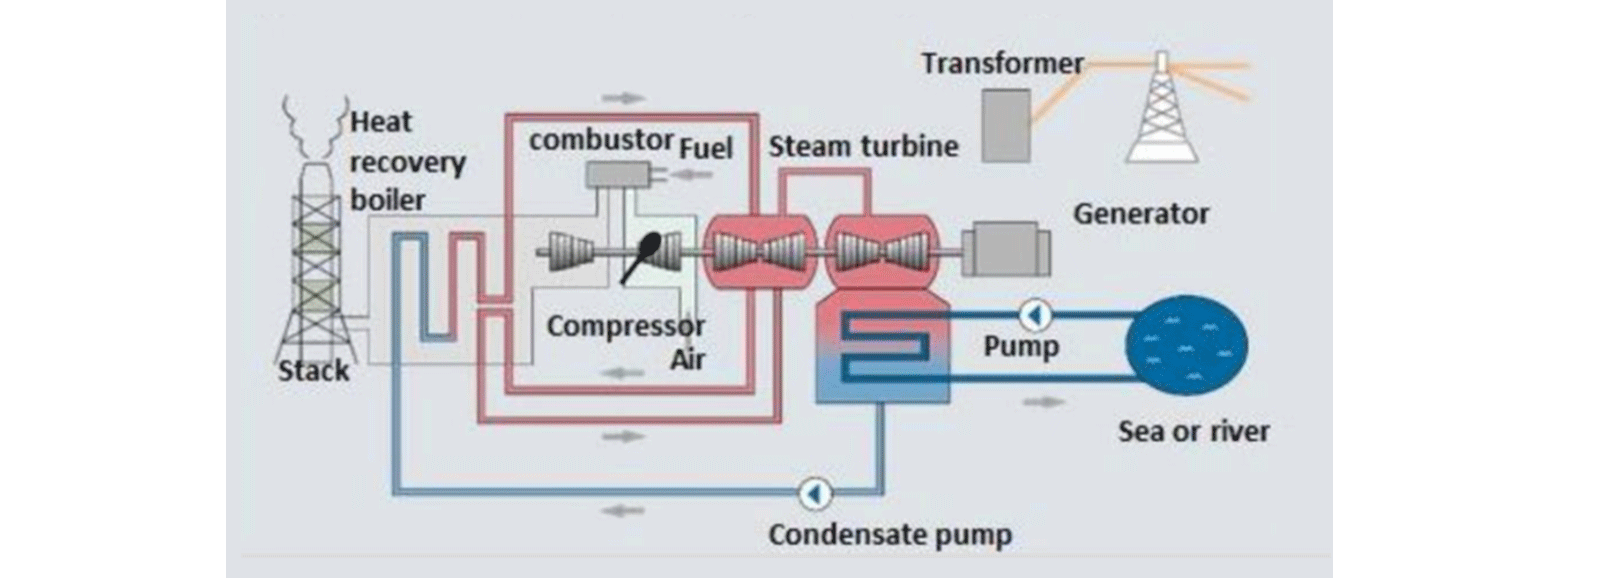 Cogeneration power plant